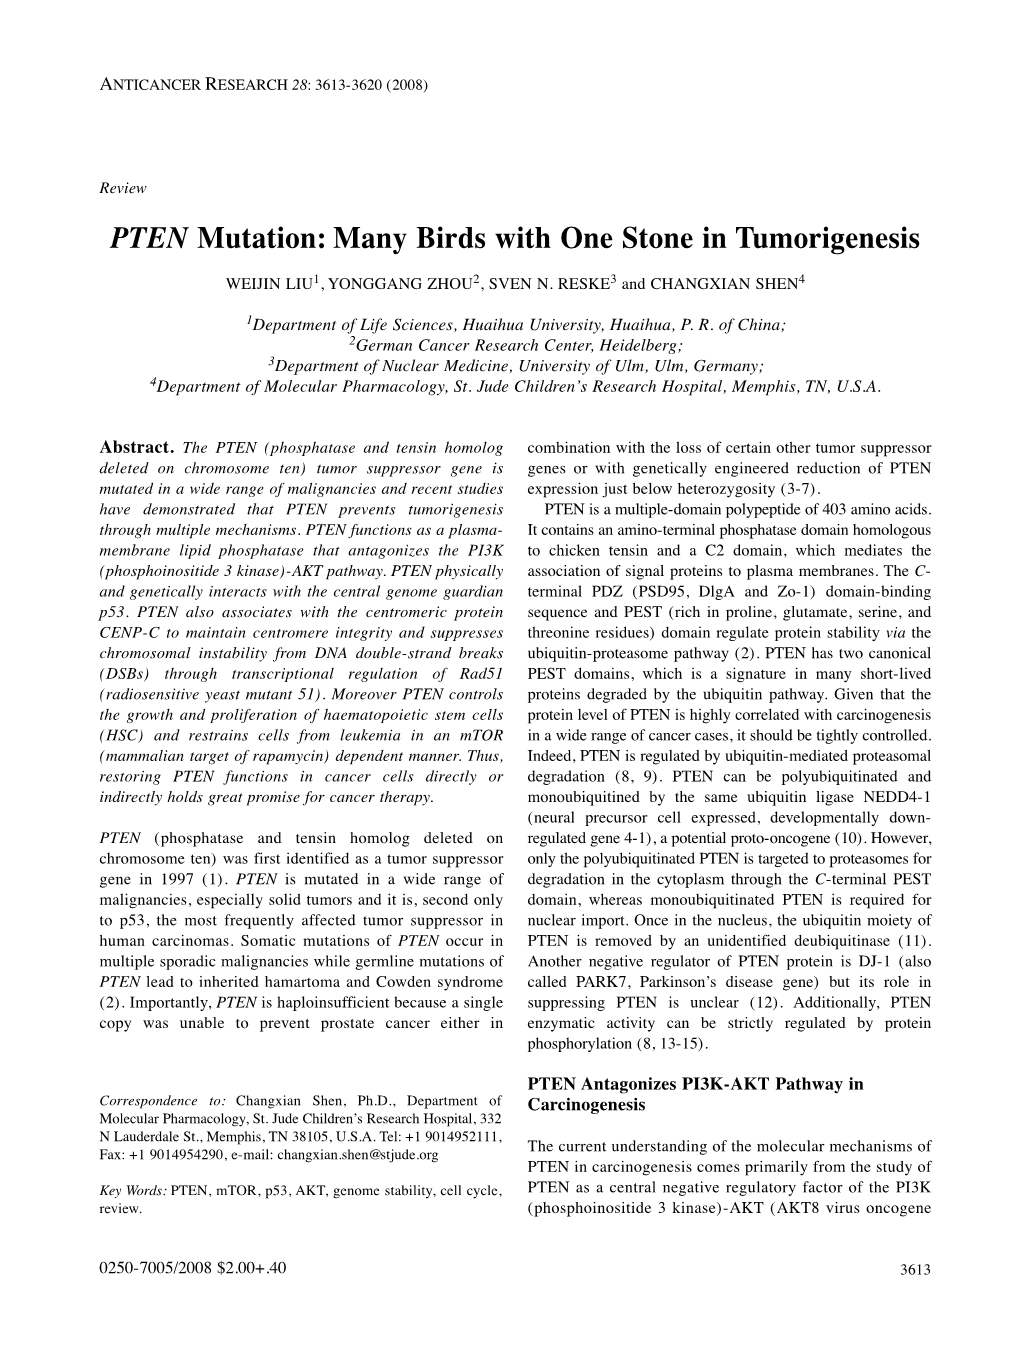 PTEN Mutation: Many Birds with One Stone in Tumorigenesis WEIJIN LIU 1, YONGGANG ZHOU 2, SVEN N